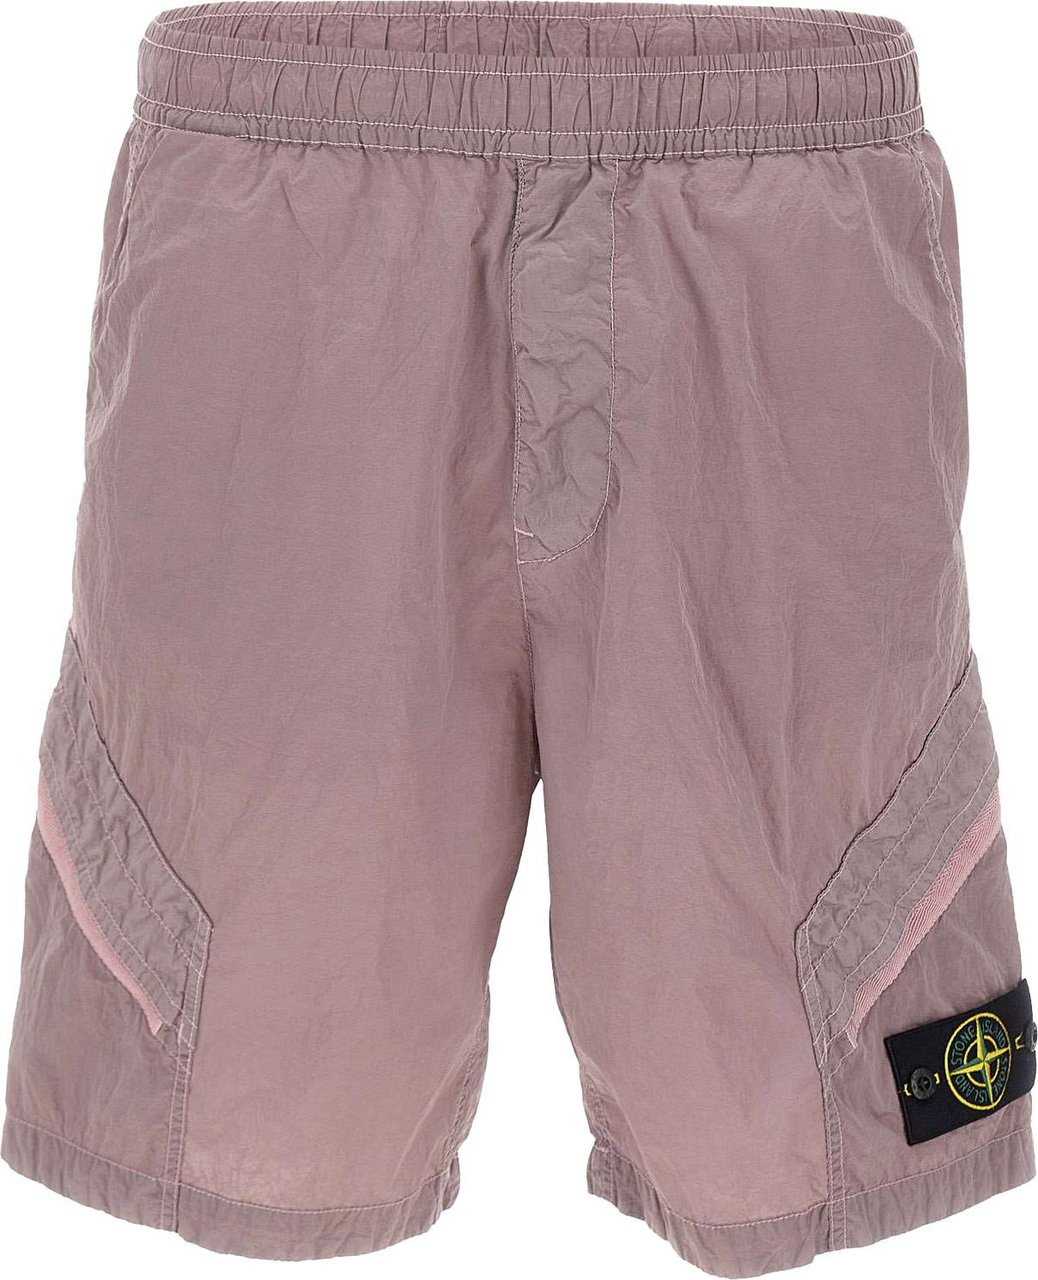 Stone Island Shorts Pink Roze